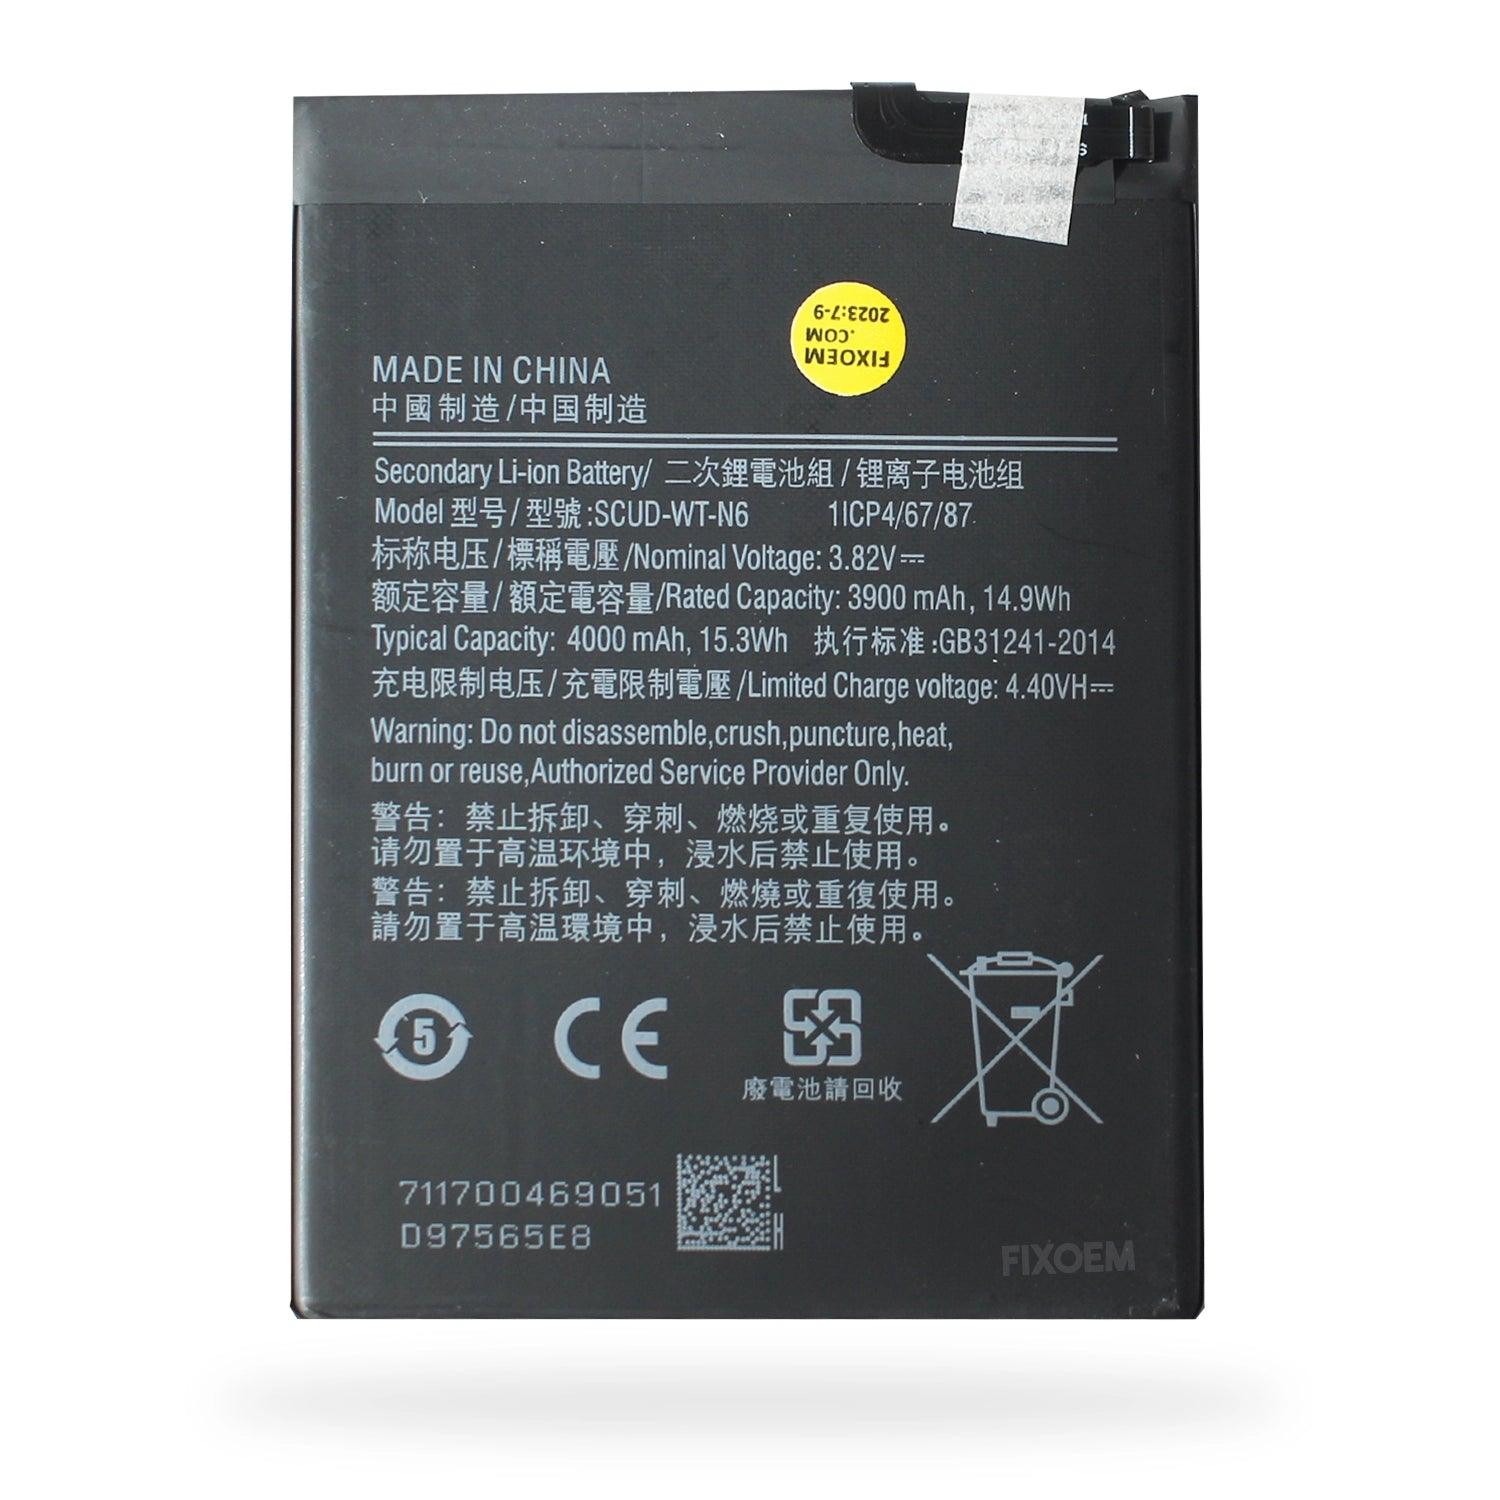 Bateria Samsung A10S / A20S / A21 Sm-A107M Sm-A207M Scud-Wt-N6. |+2,000 reseñas 4.8/5 ⭐